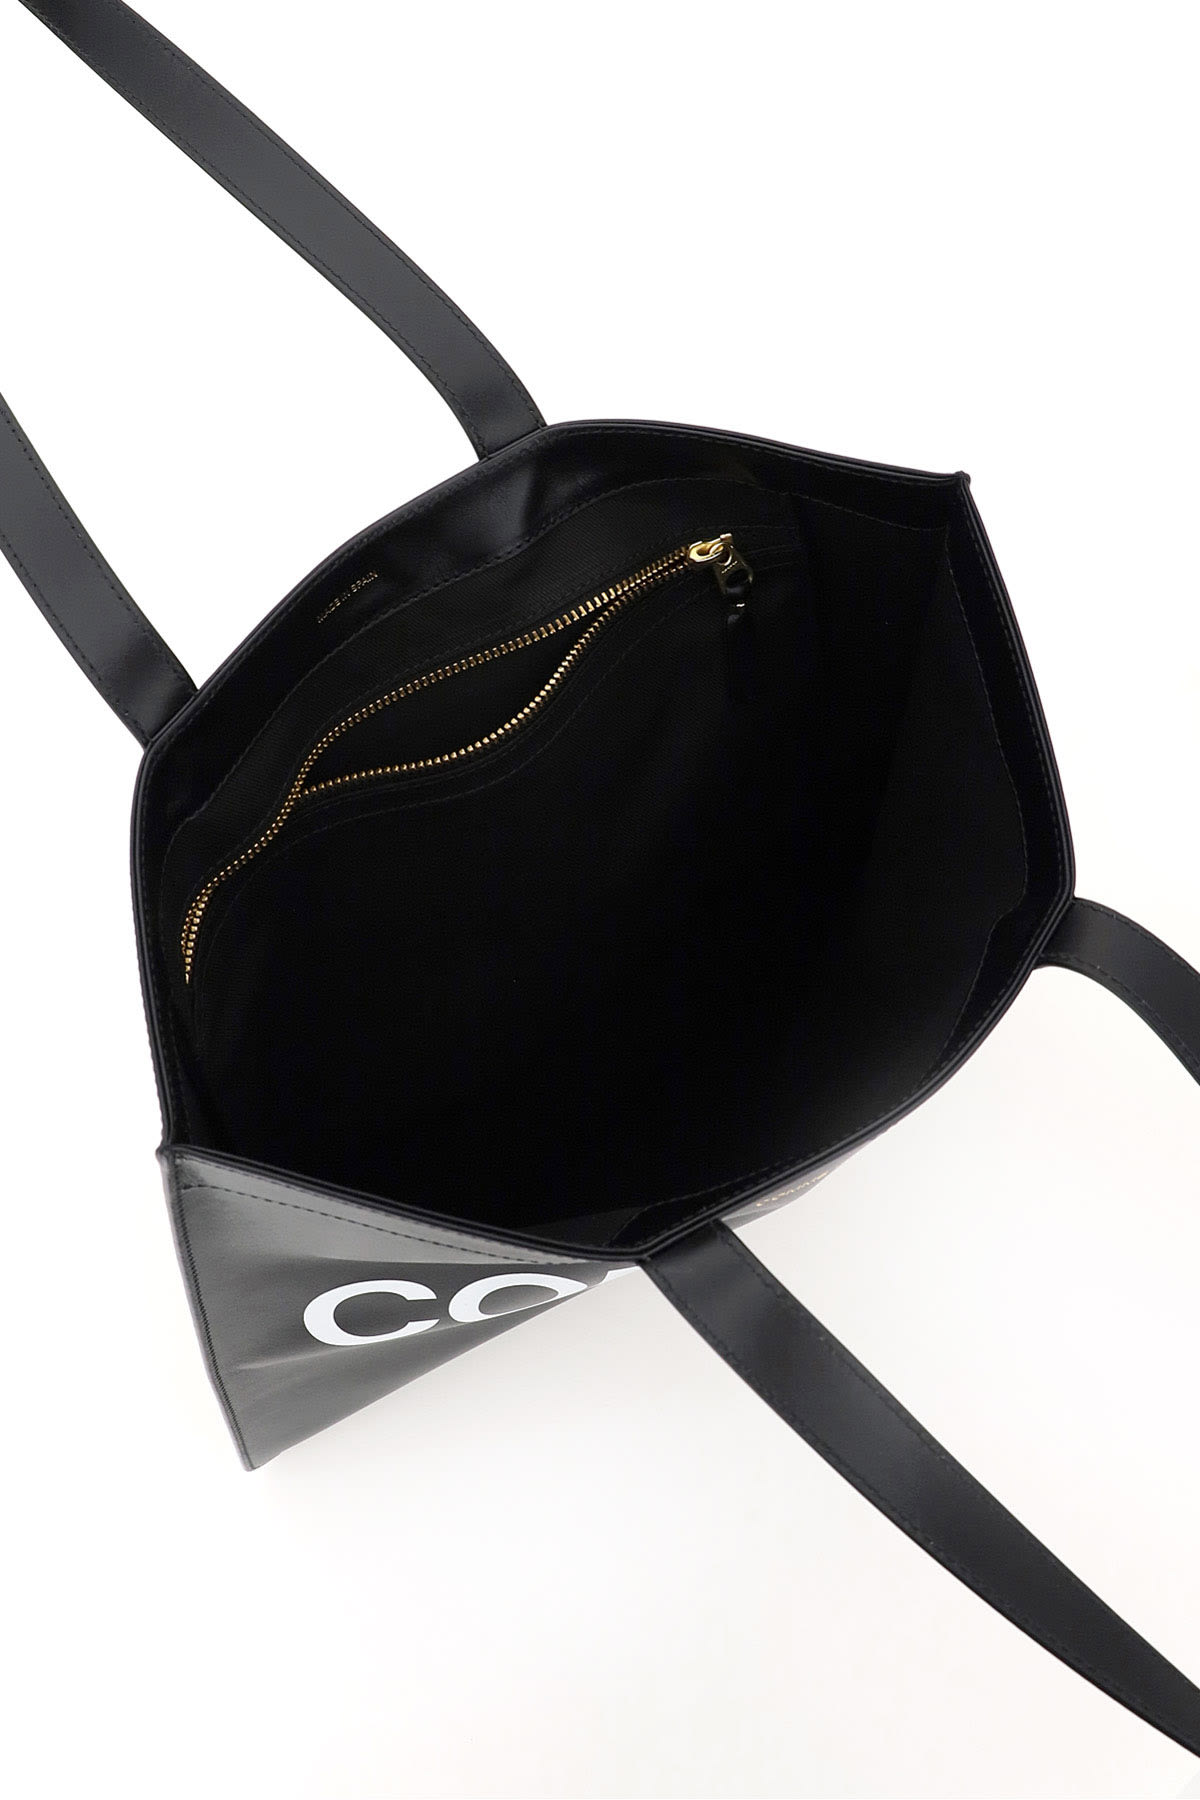 Shop Comme Des Garçons Leather Tote Bag With Logo In Black (black)